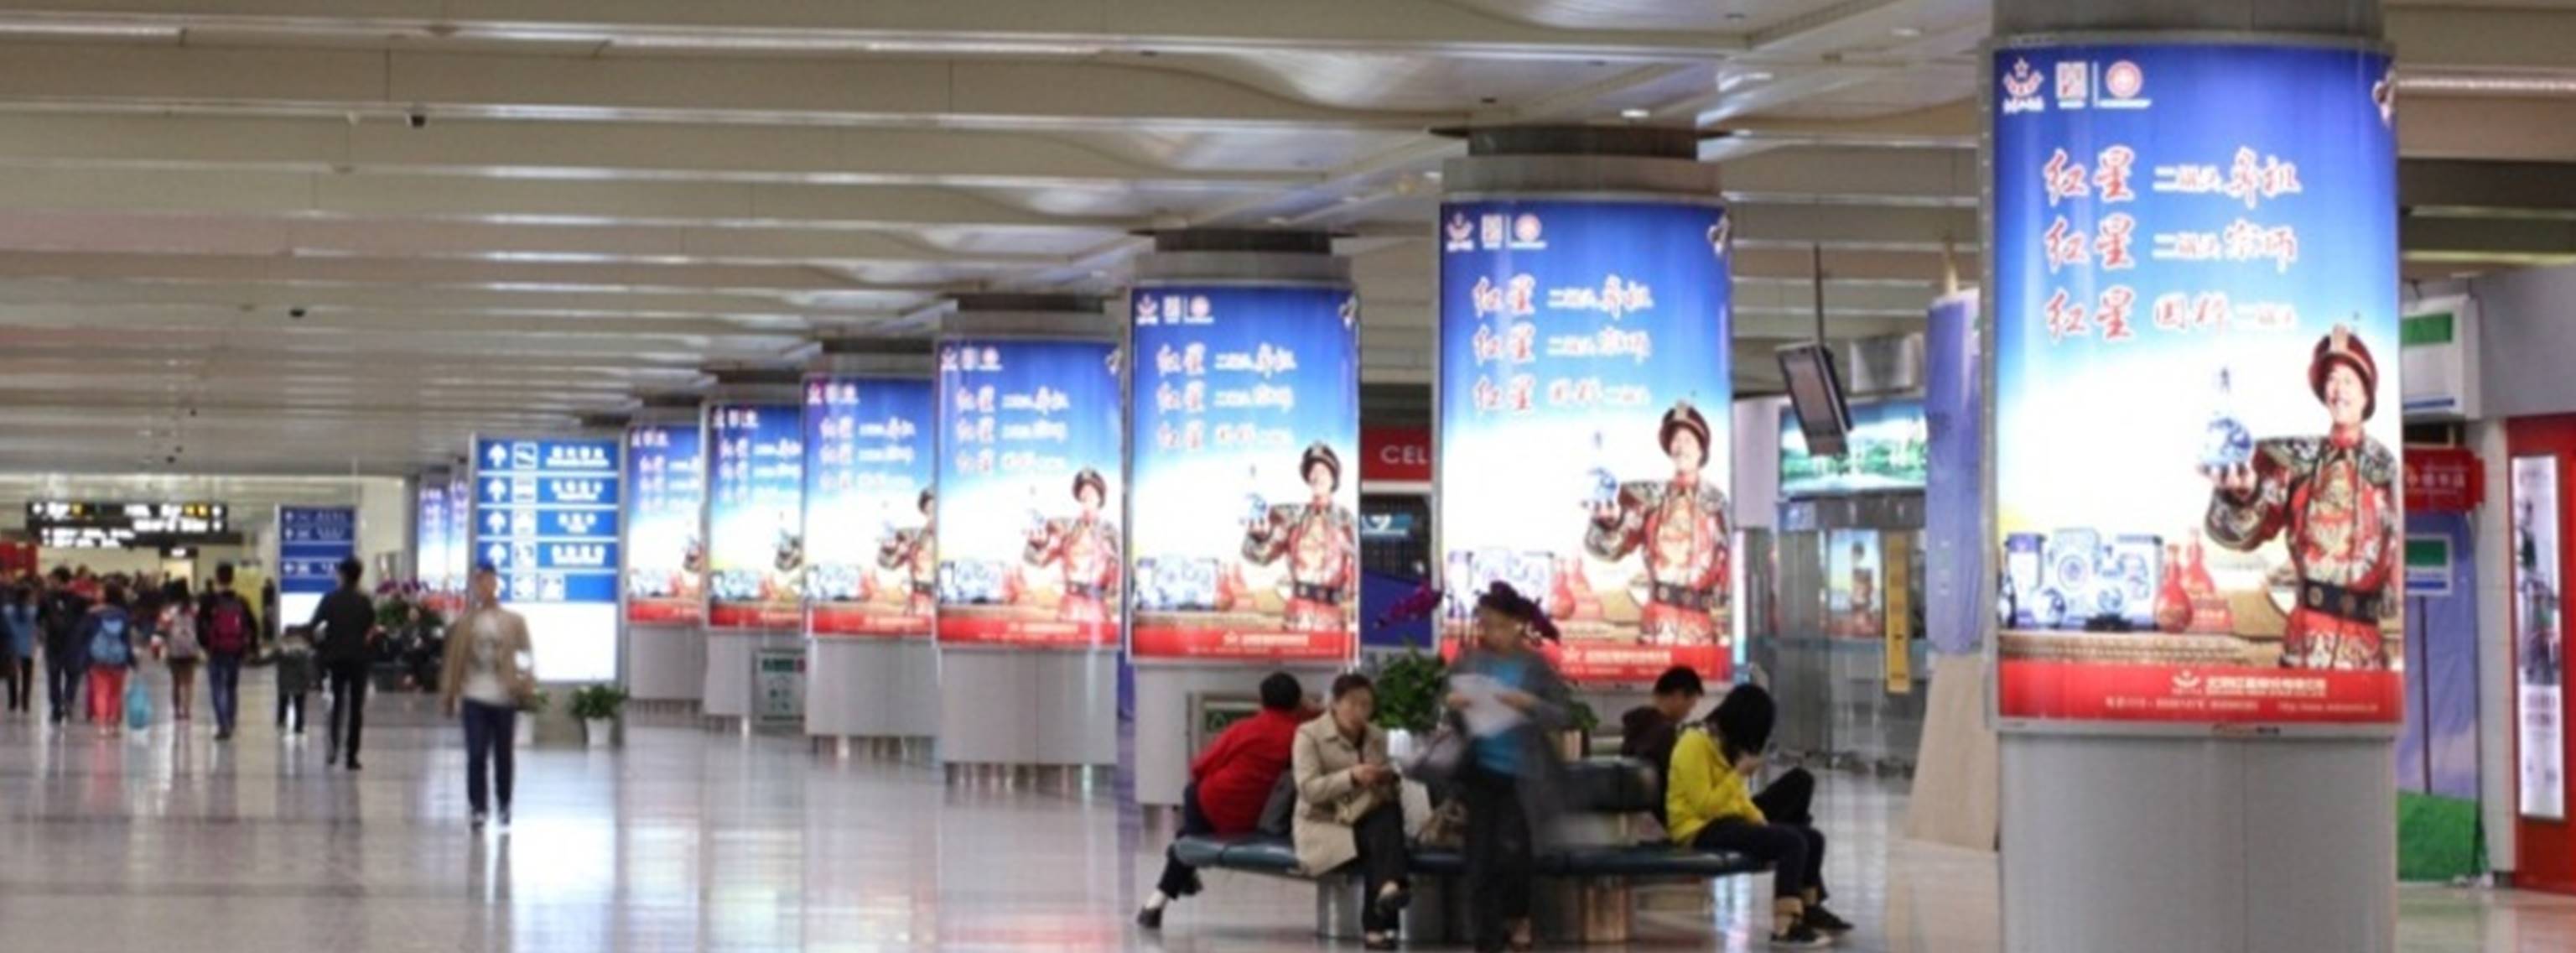 杭州萧山机场广告-T1迎客厅联排包柱灯箱DB56-70